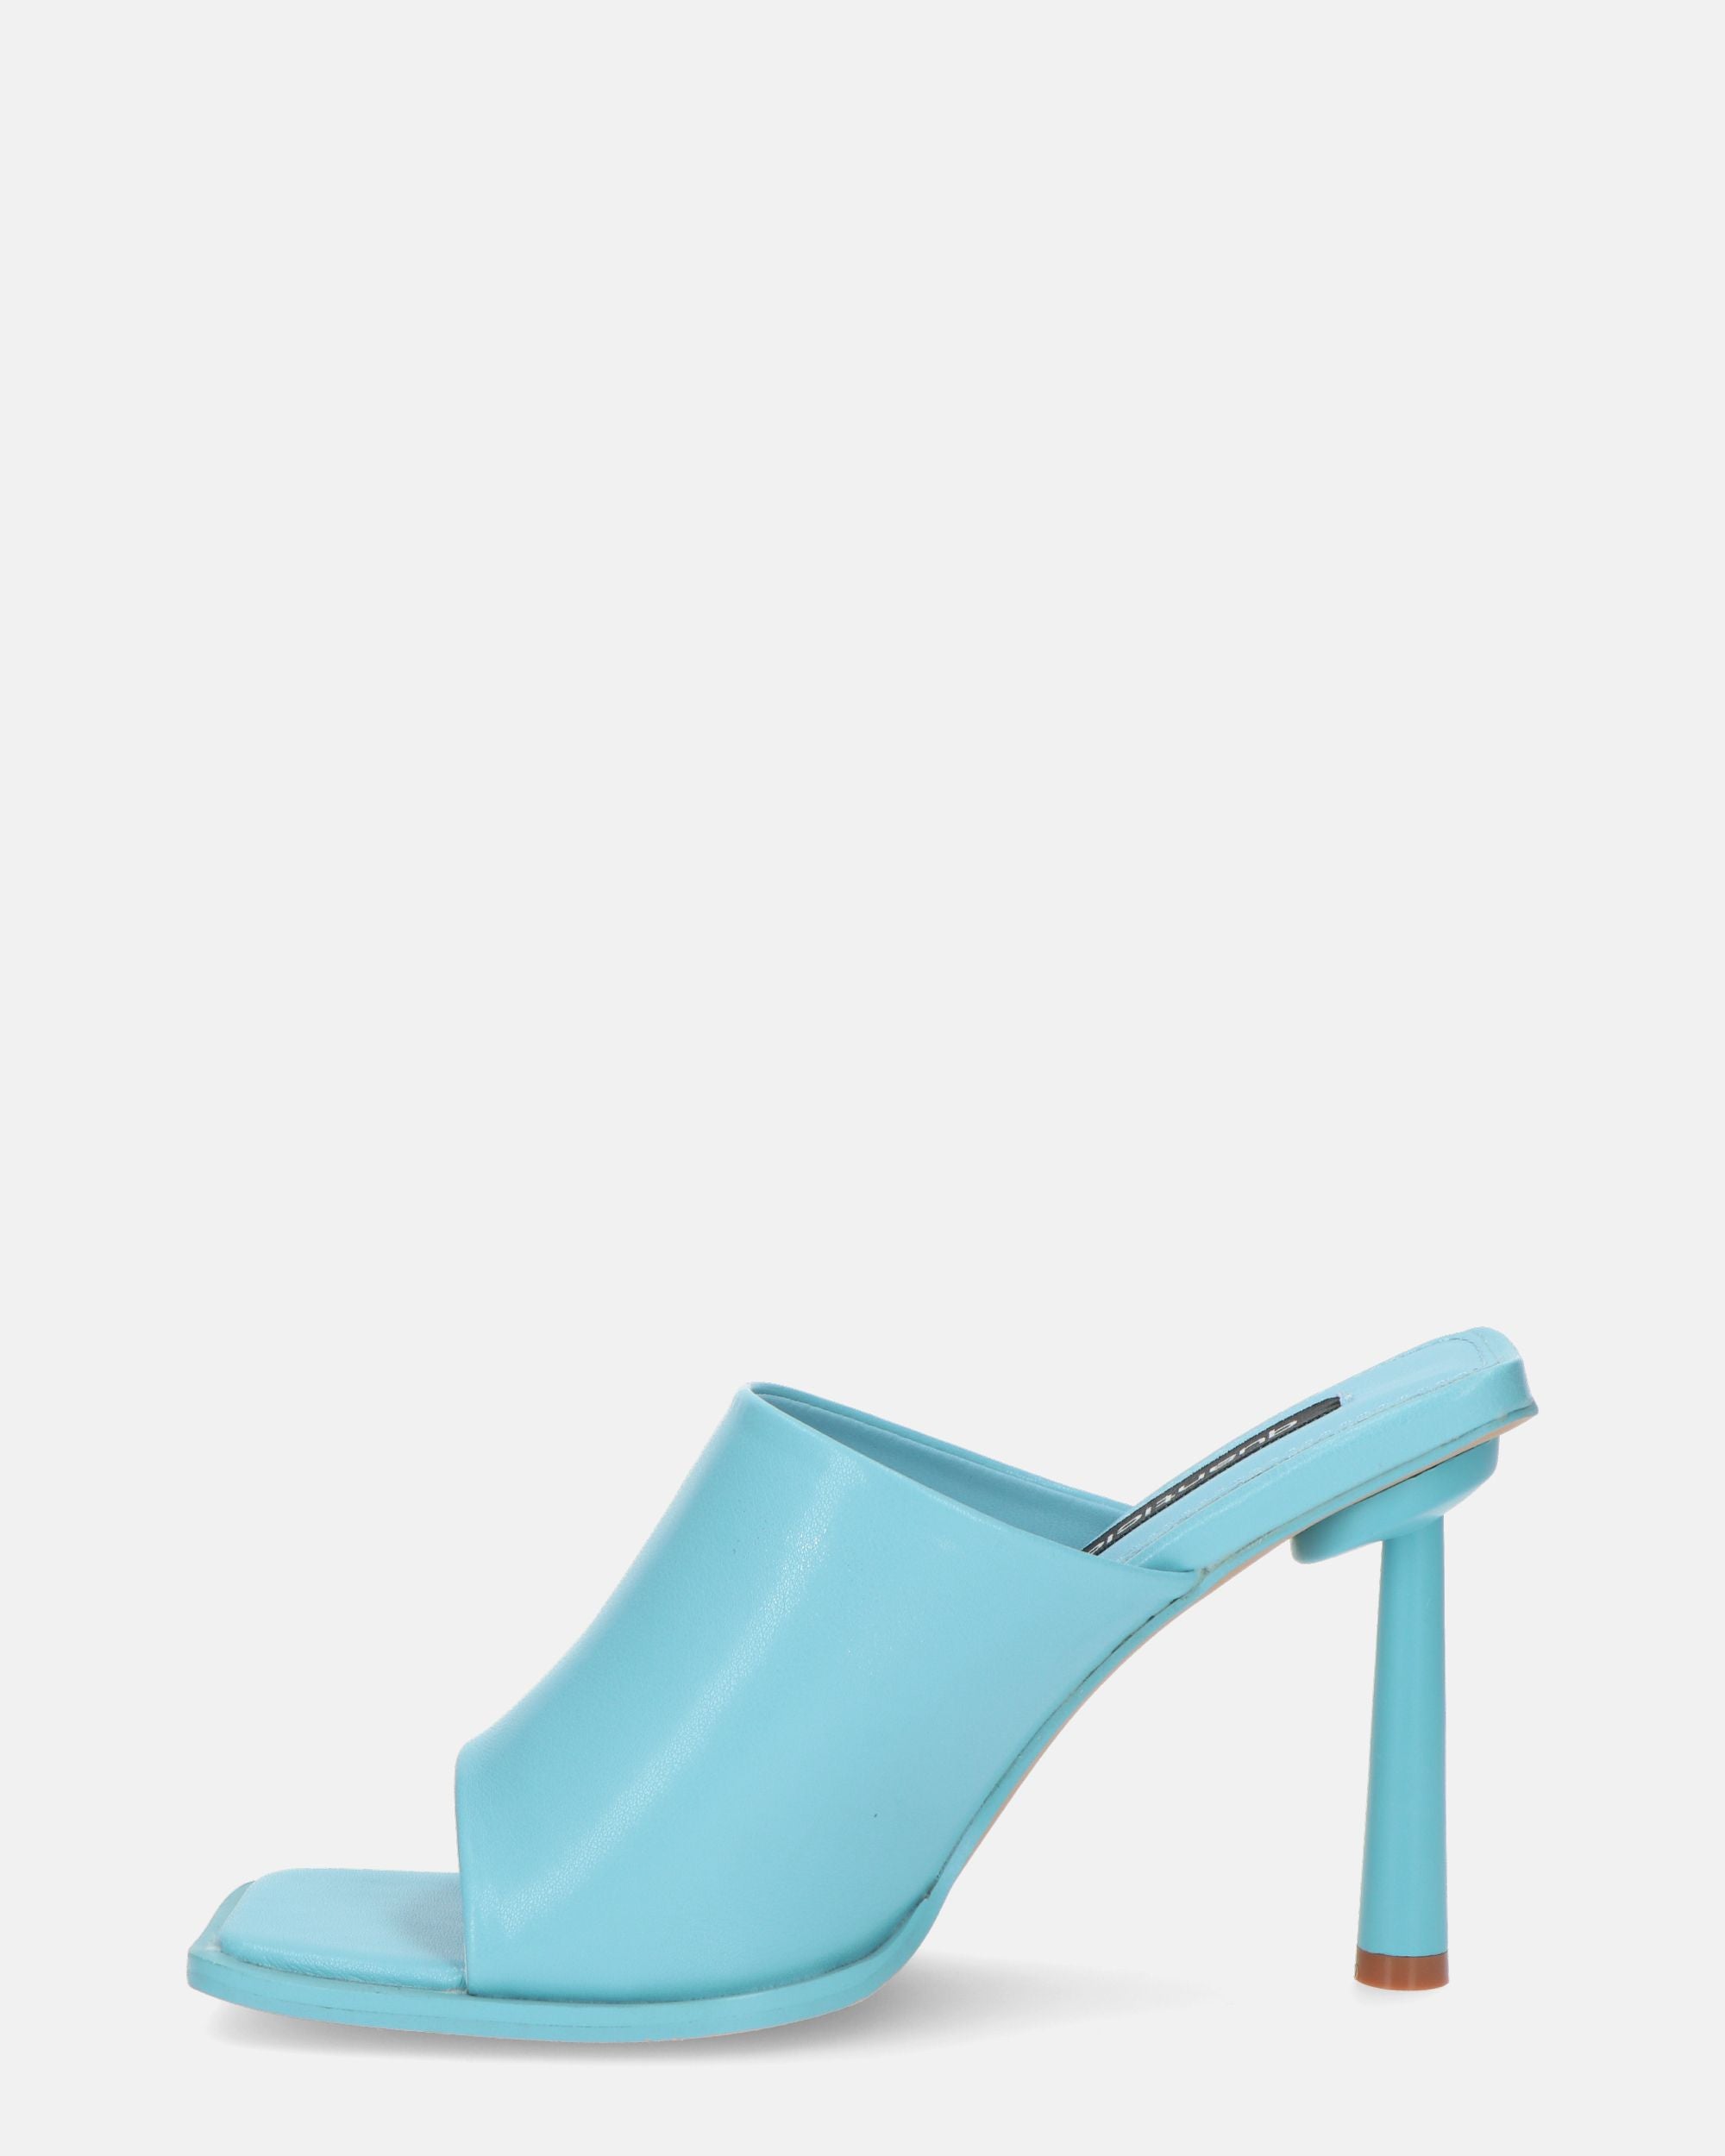 MIRANDA - zapatos azul con tacones de aguja